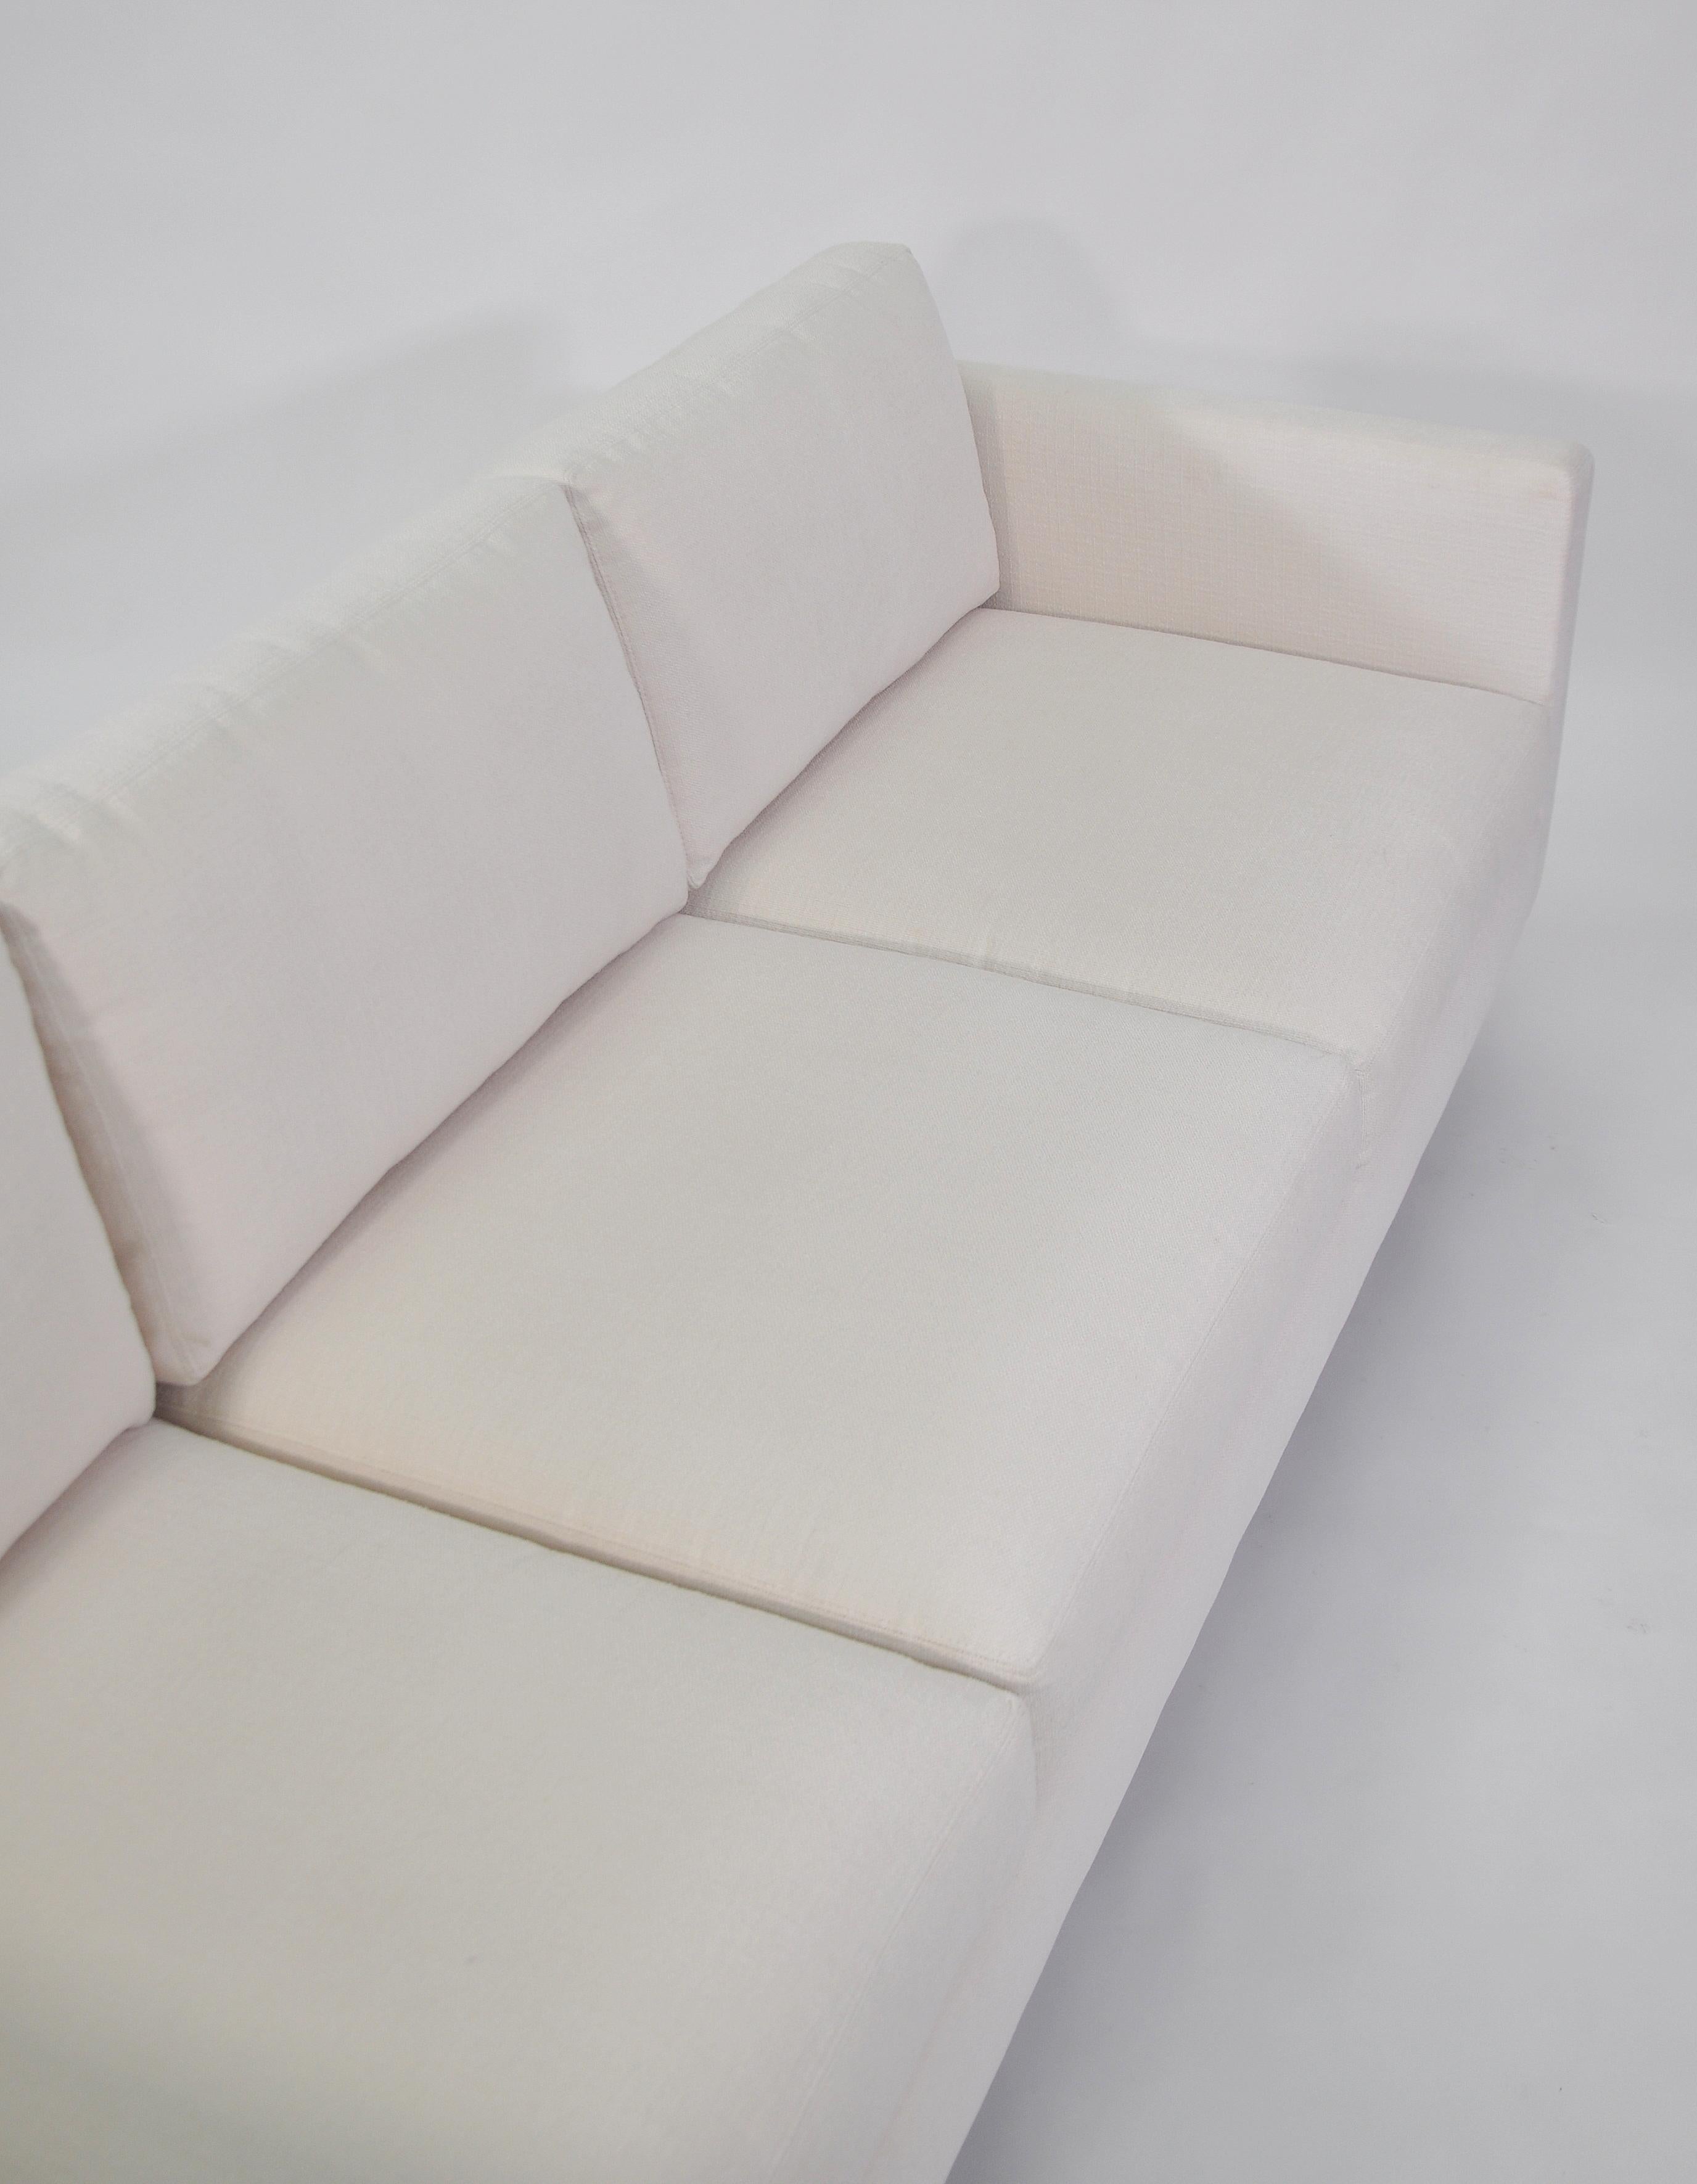 Milo Baughman White Sofa, Thayer Coggin 855 Design Classic 1